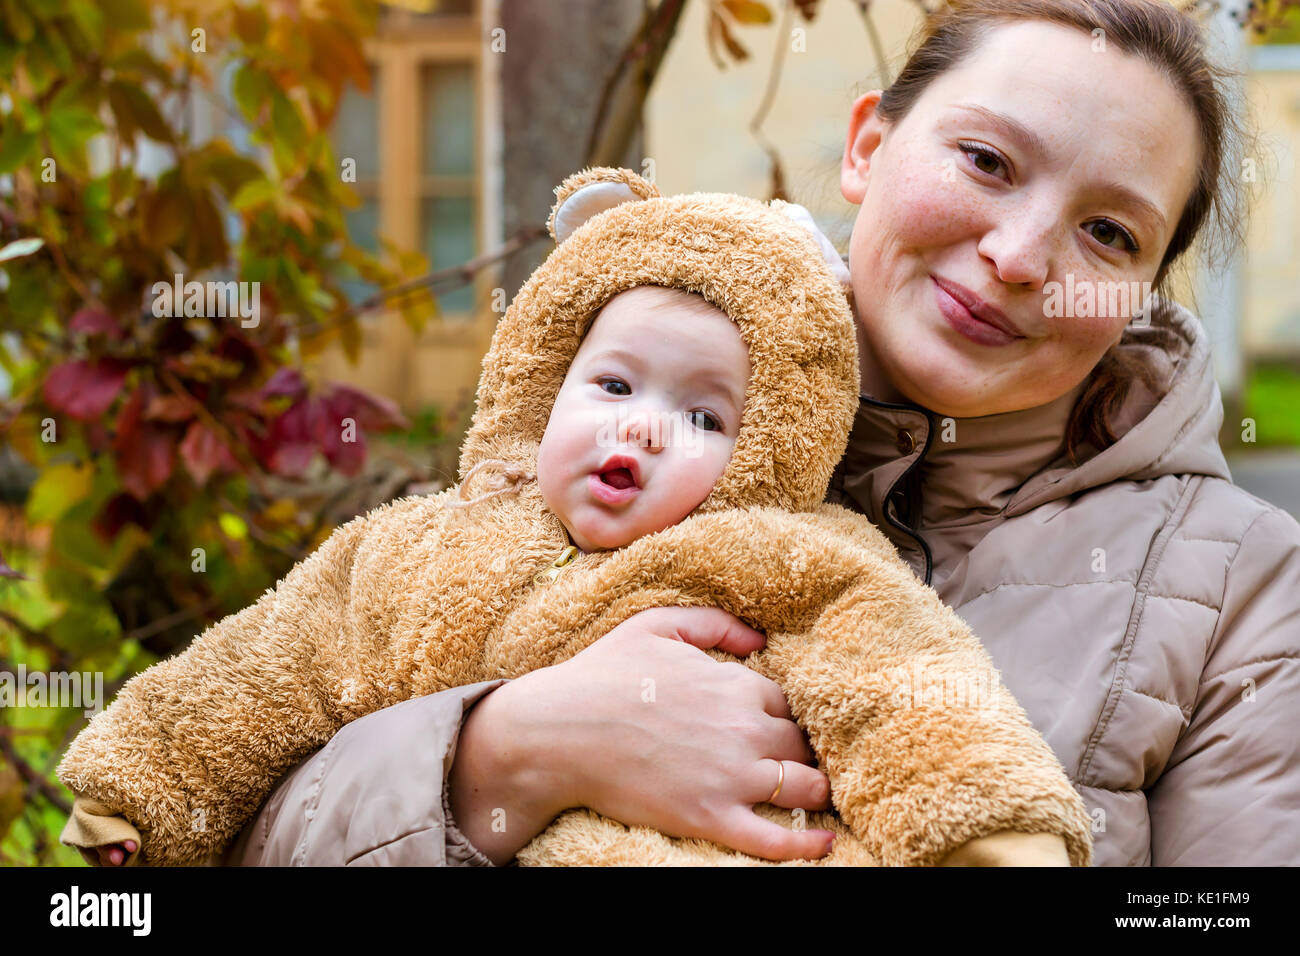 Frau mit Baby in den Armen, auf dem Hintergrund der Herbst Park posieren. Kind gekleidet in warmen stilisierte Teddy - Bär Kostüm, Spaß am Arm der Mutter. Familie w Stockfoto